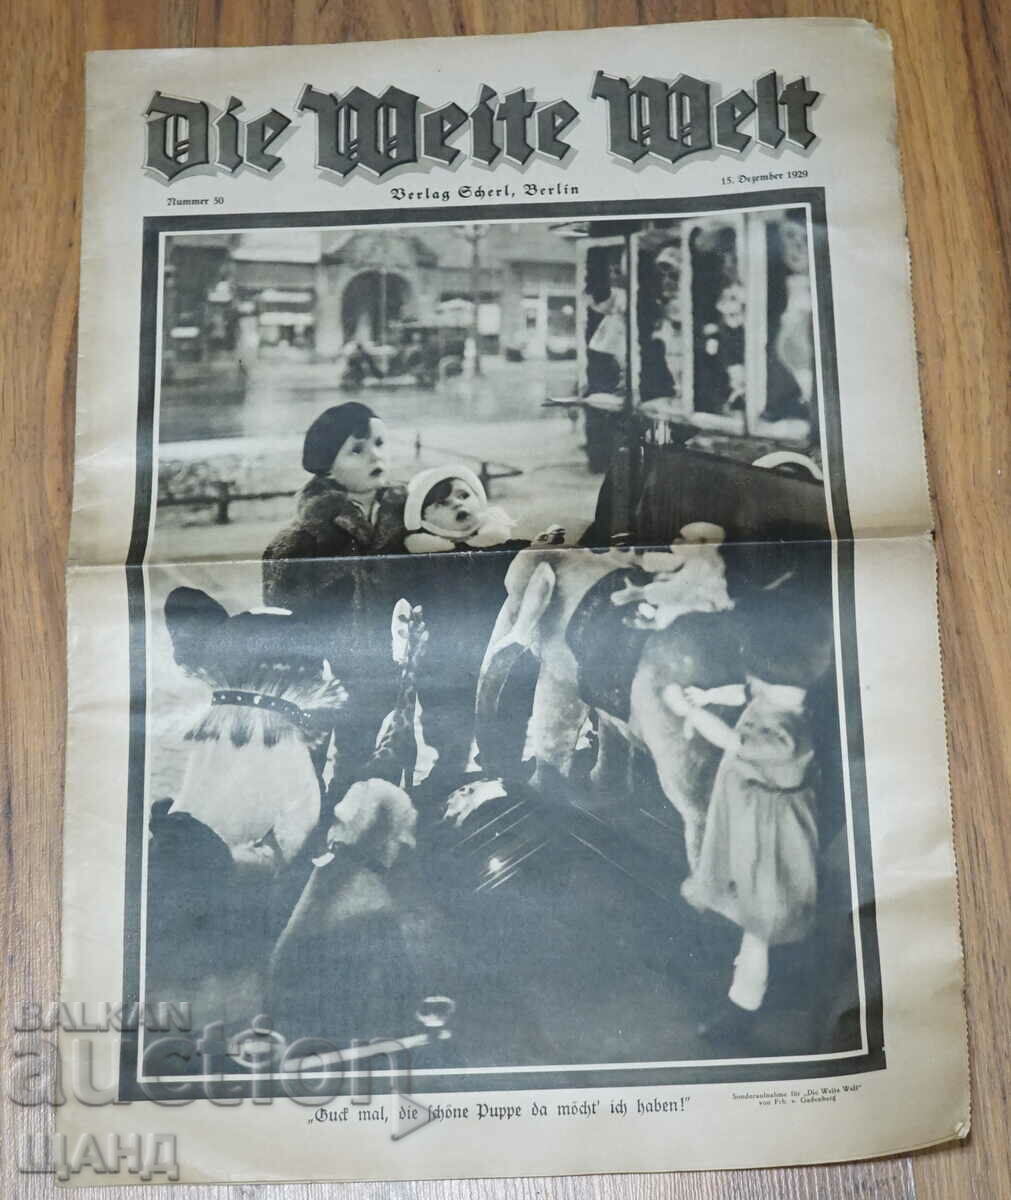 1929 German magazine DIE WEITE WELT Issue 50